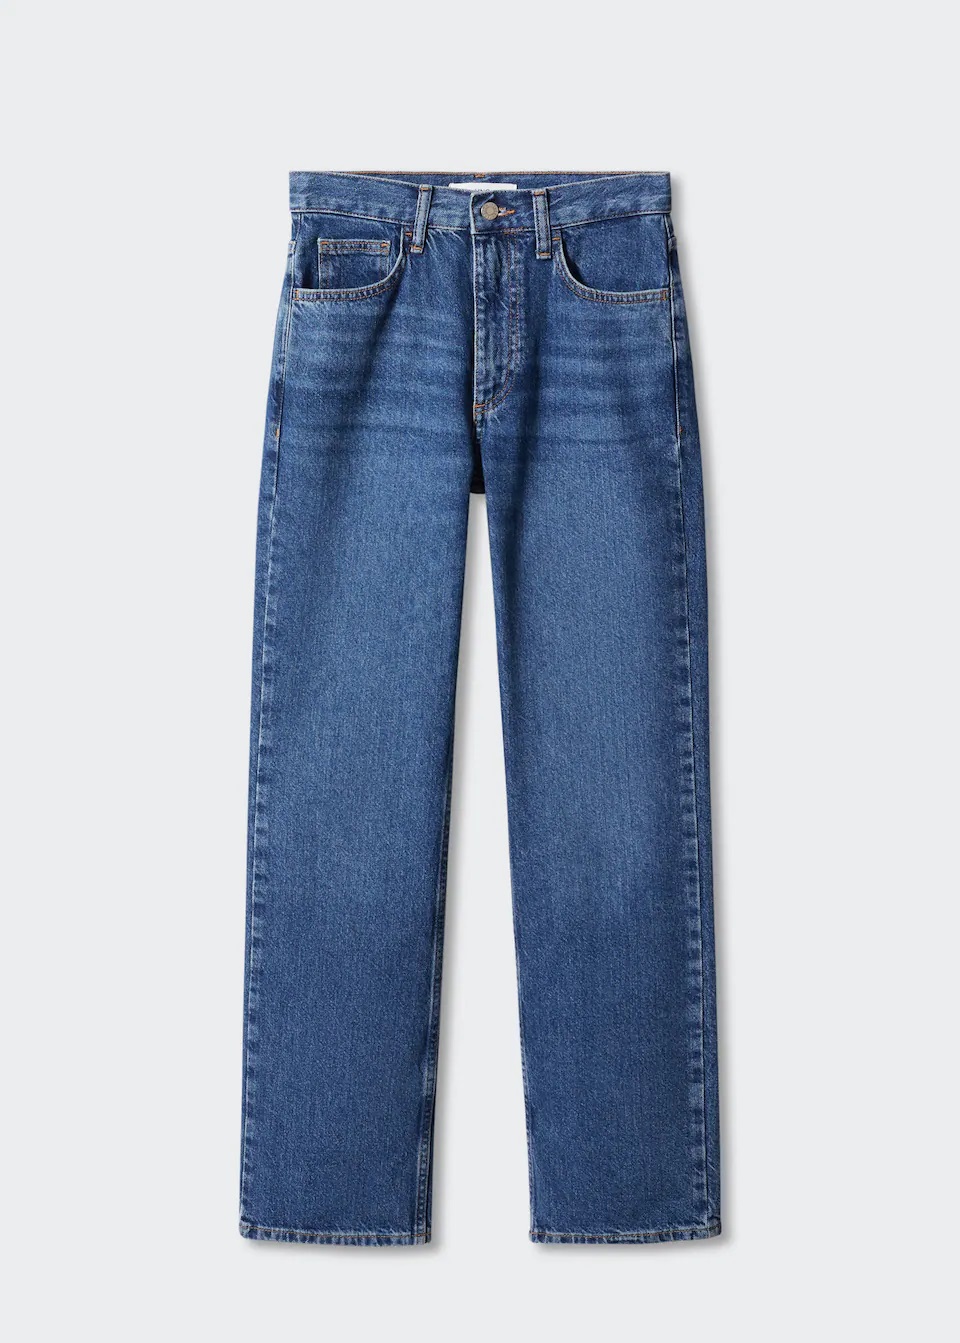 Für mich ist es eine Selbstverständlichkeit, am Black Friday Basics wie diese Jeans einzukaufen.